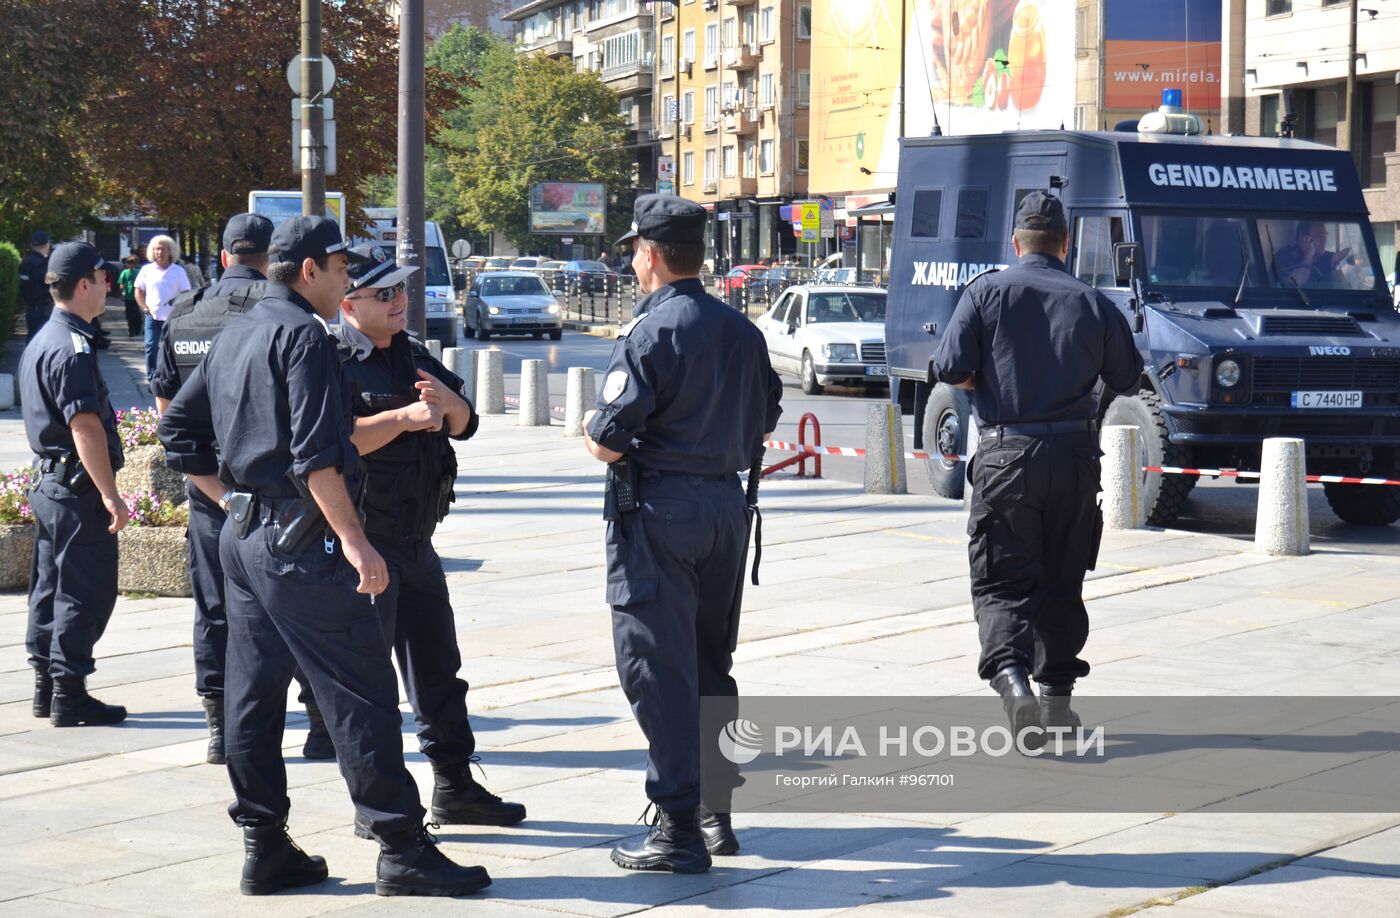 Меры безопасности перед антицыганскими акциями в Болгарии